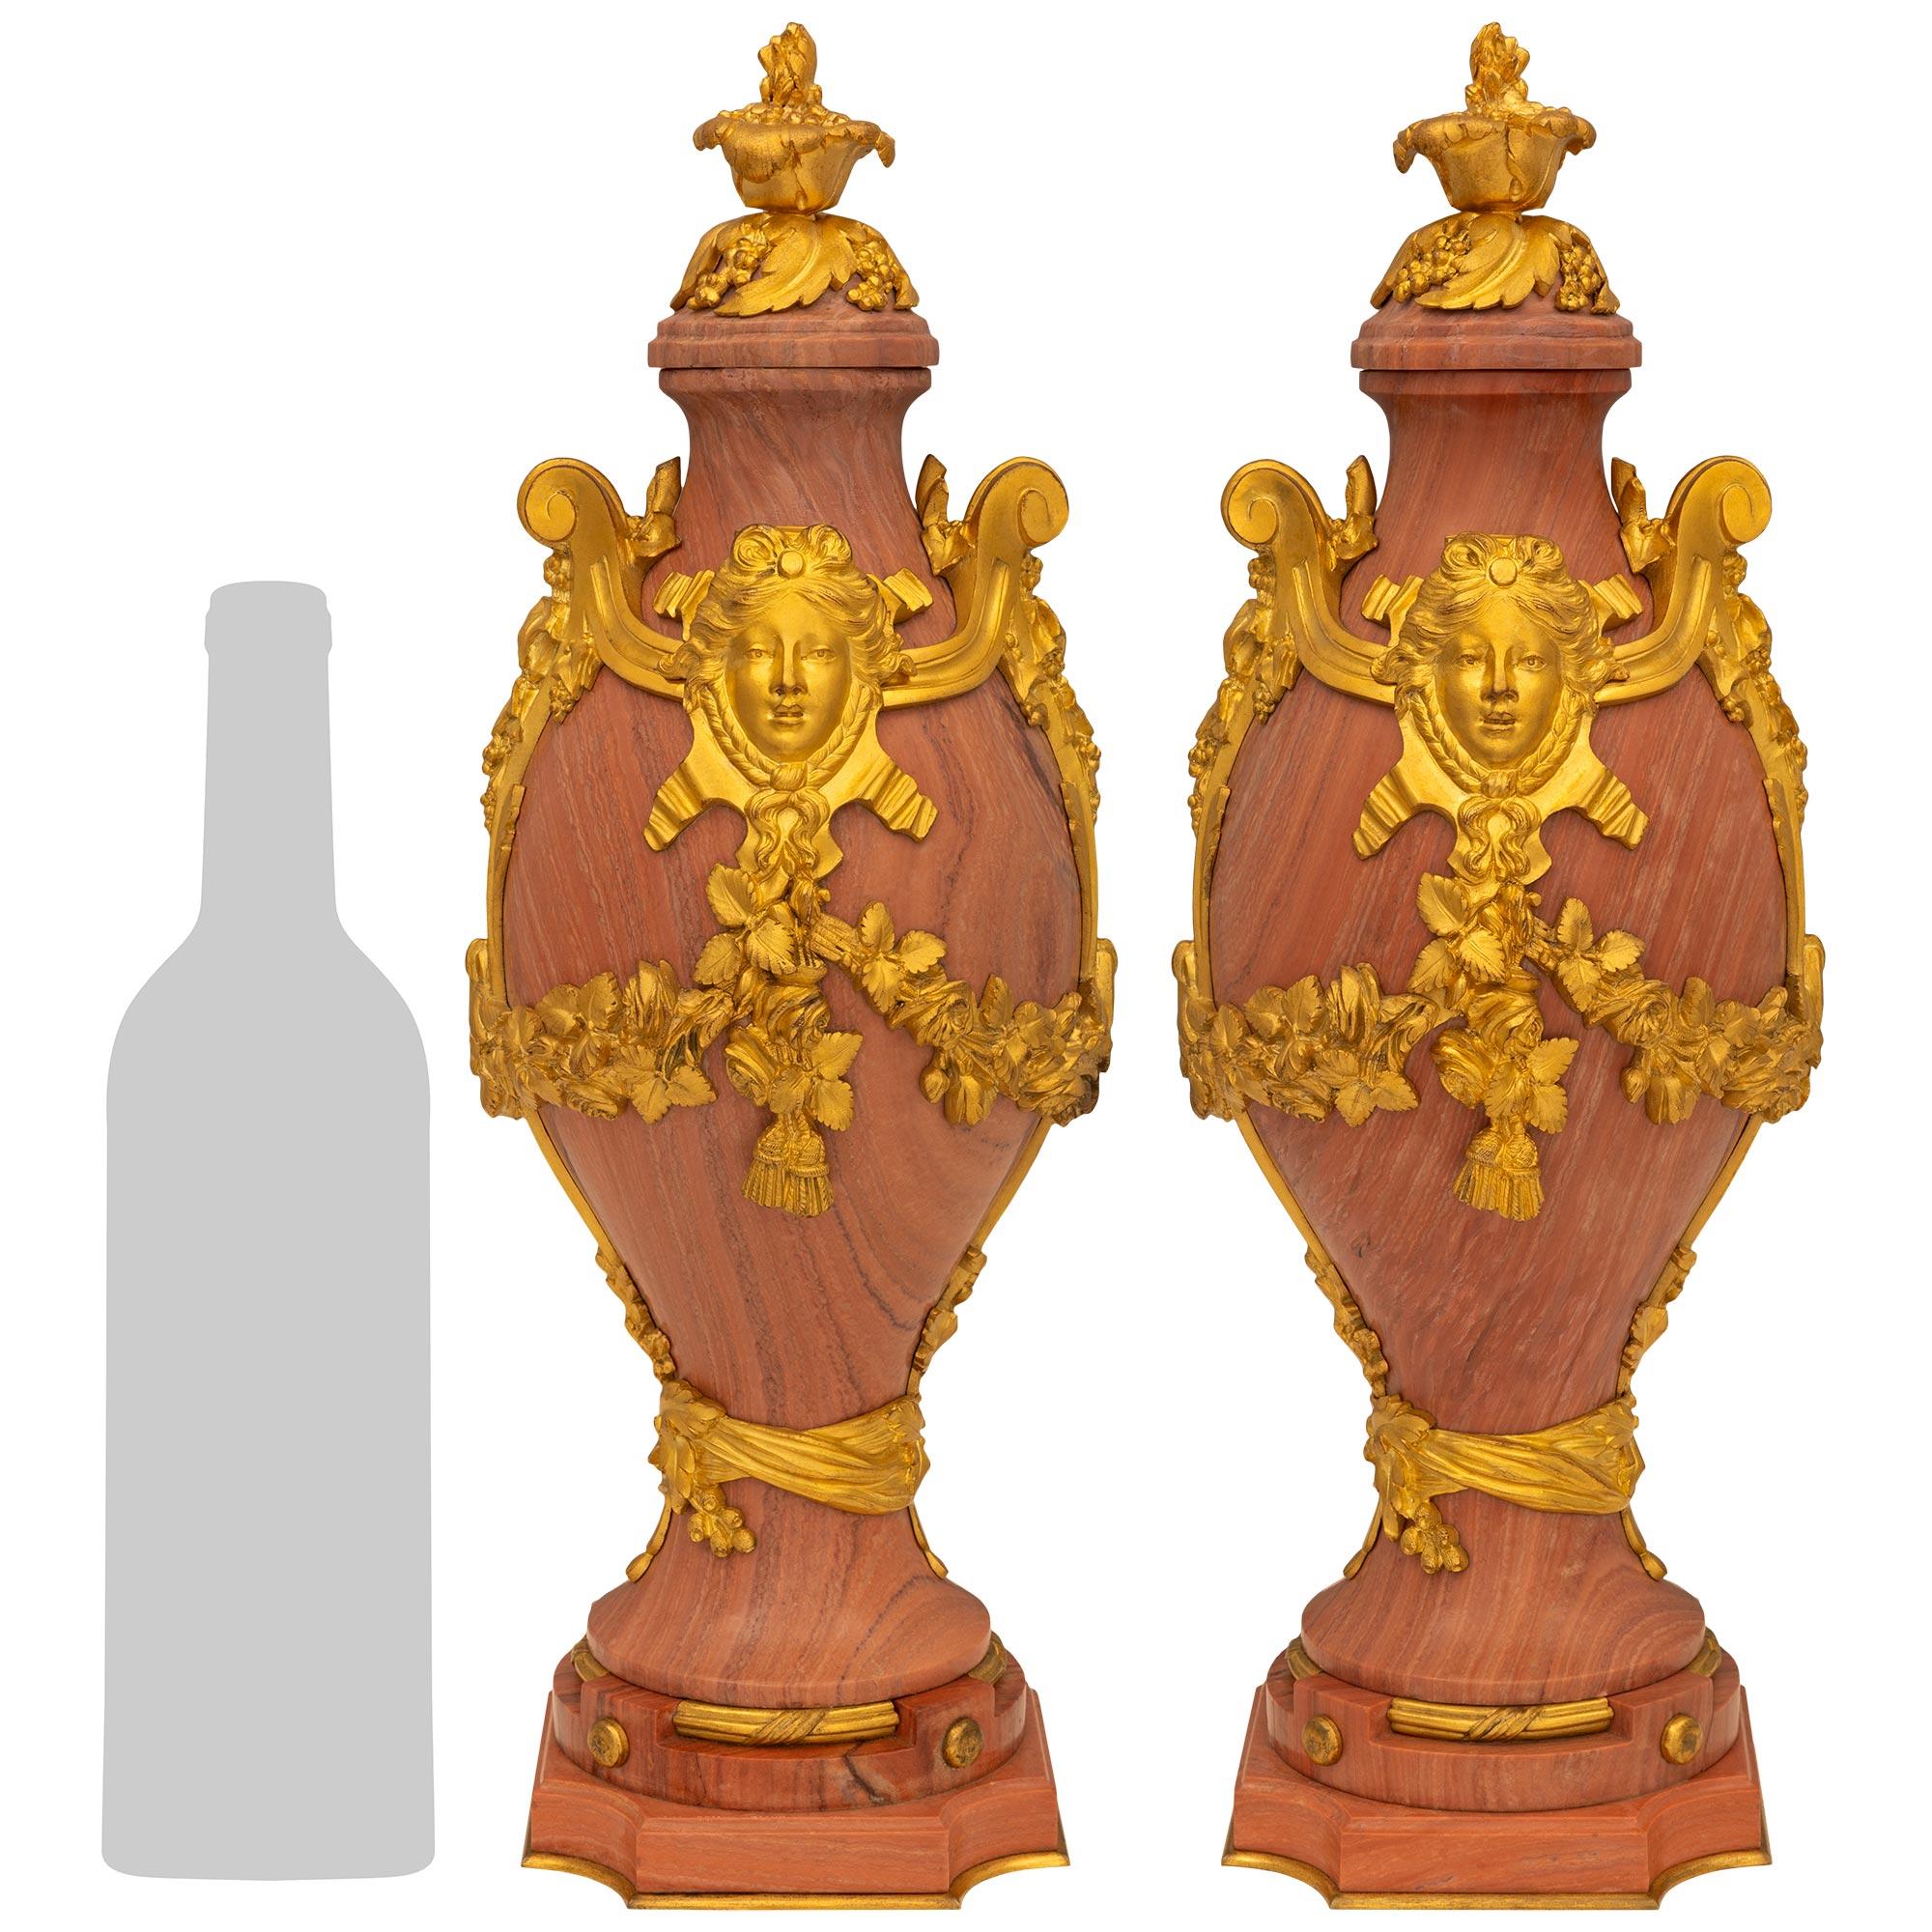 Une impressionnante paire d'urnes en marbre et bronze doré de style Louis XVI du XIXe siècle. Chaque urne de forme unique est surmontée d'une base carrée en marbre aux angles concaves et d'une bande inférieure en bronze doré. Le support circulaire